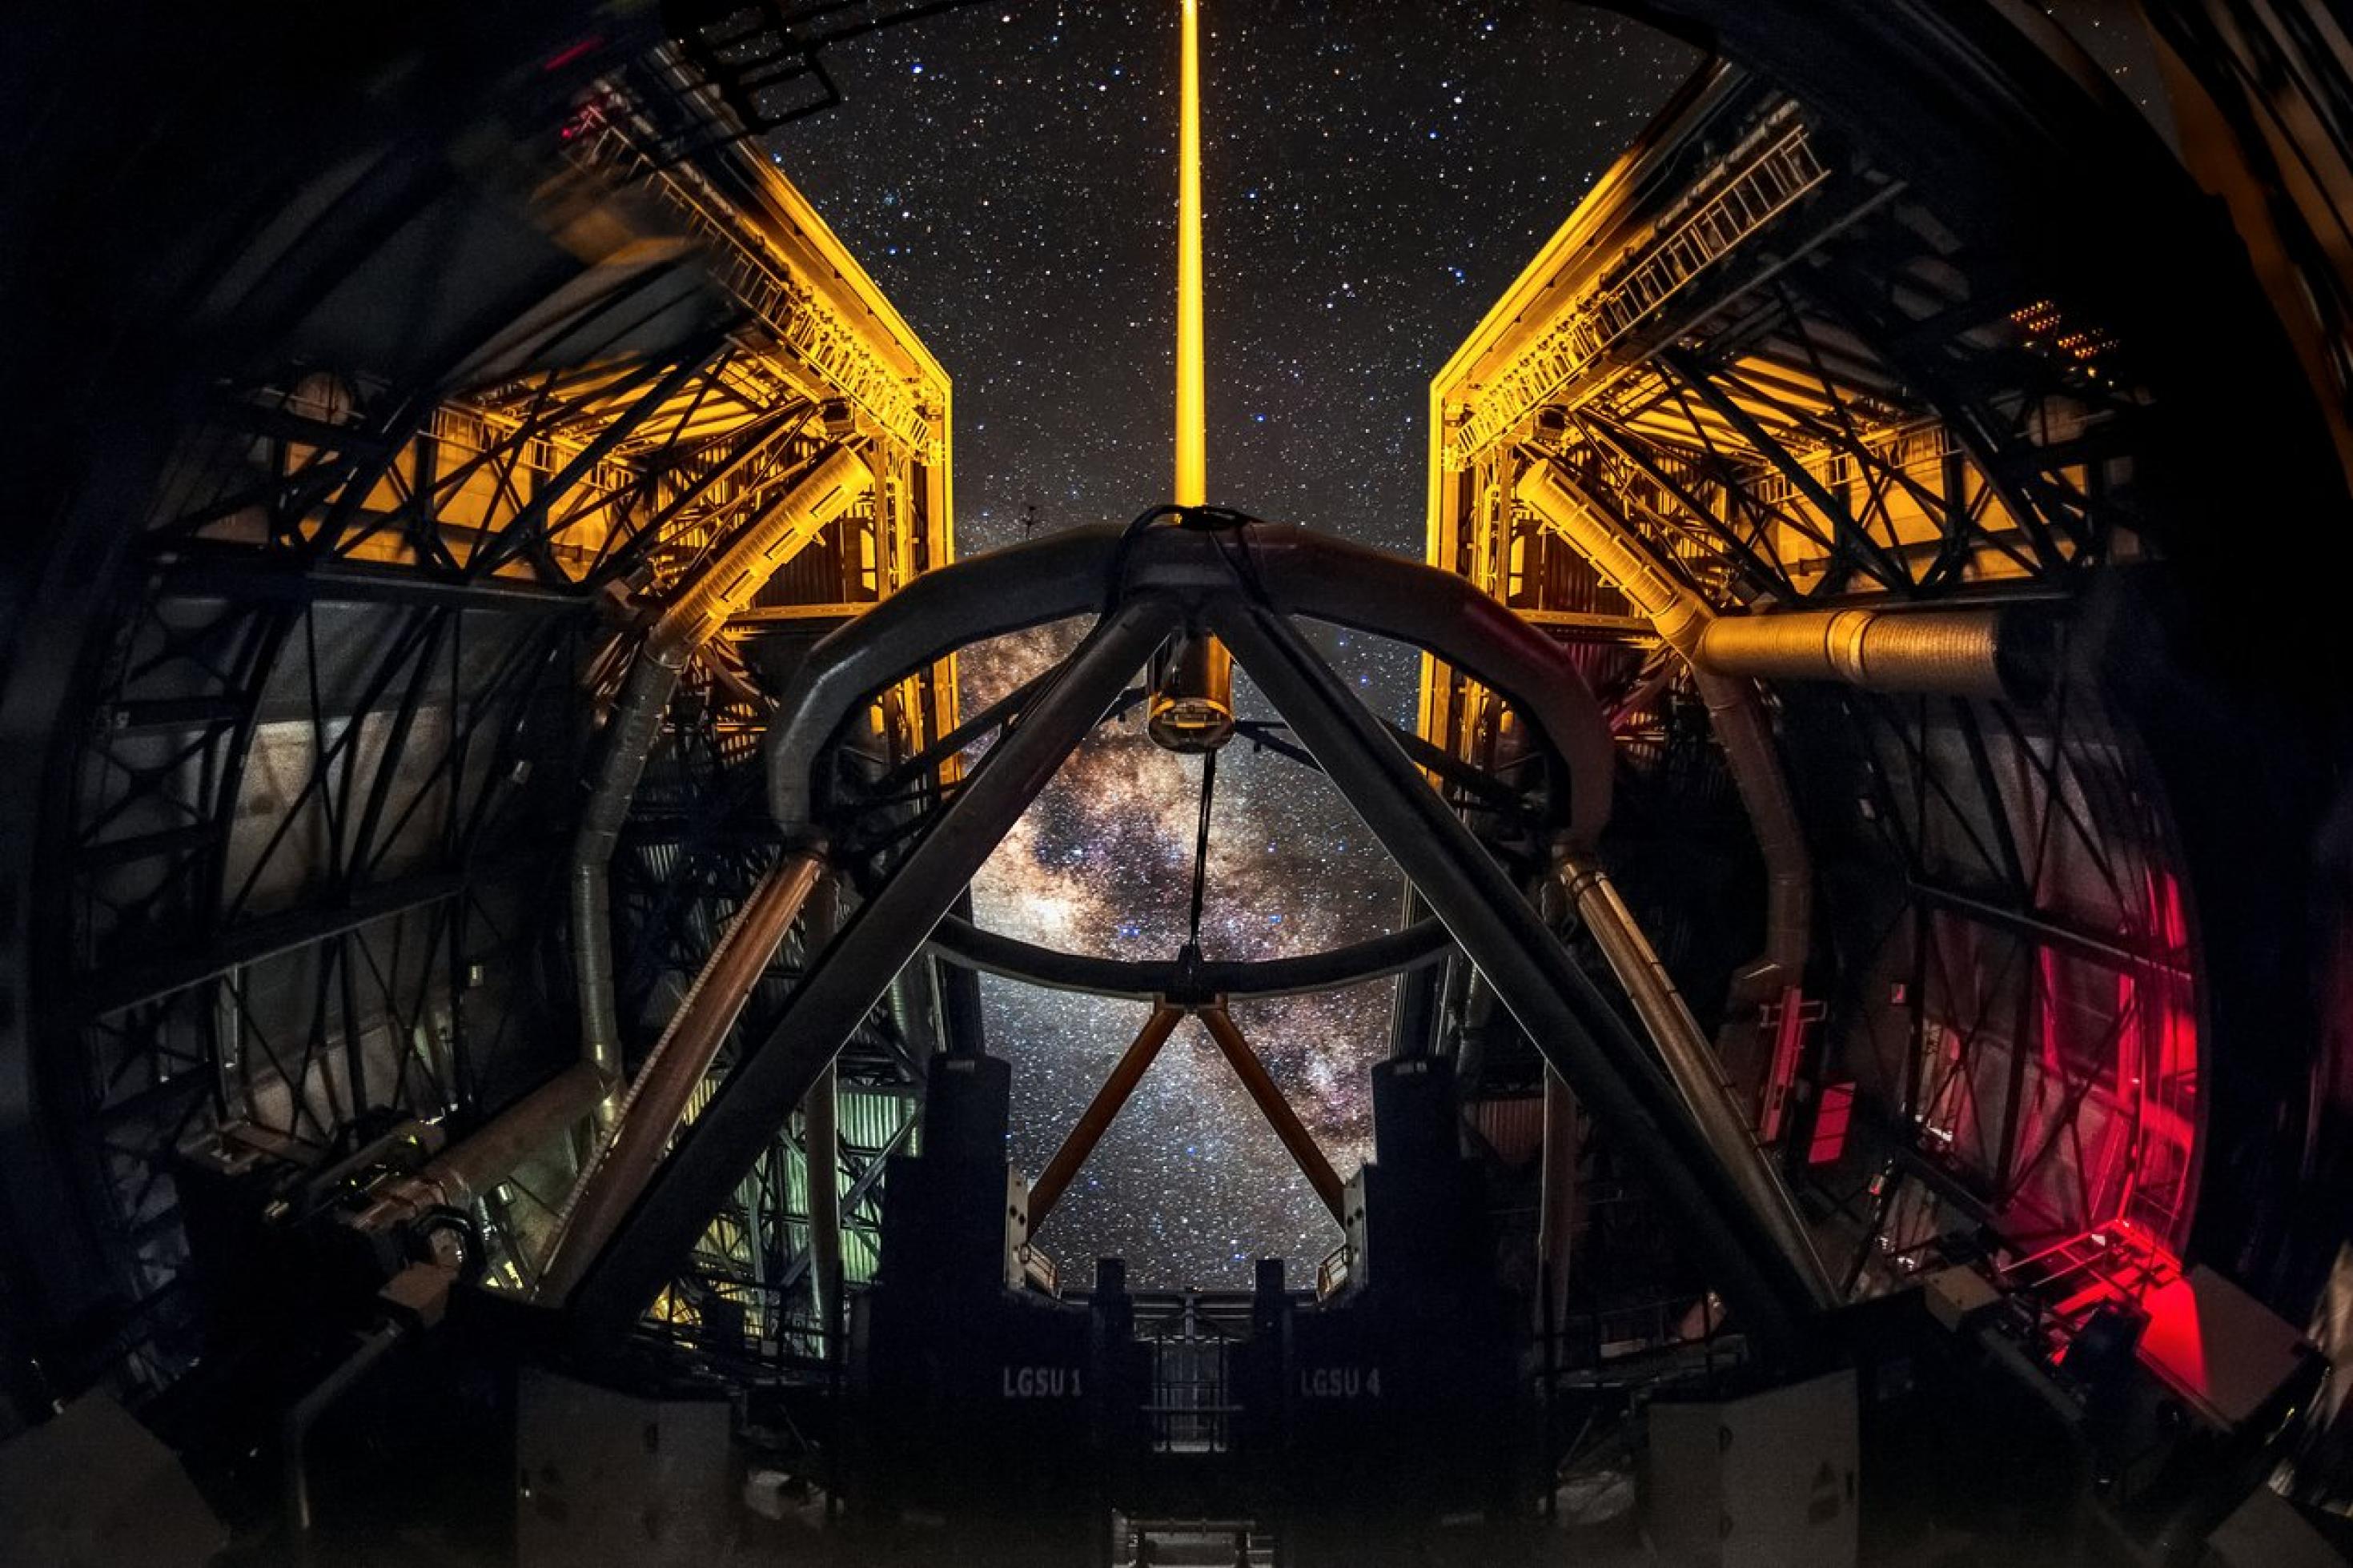 ein Blick von innen eines Teleskops [AI]